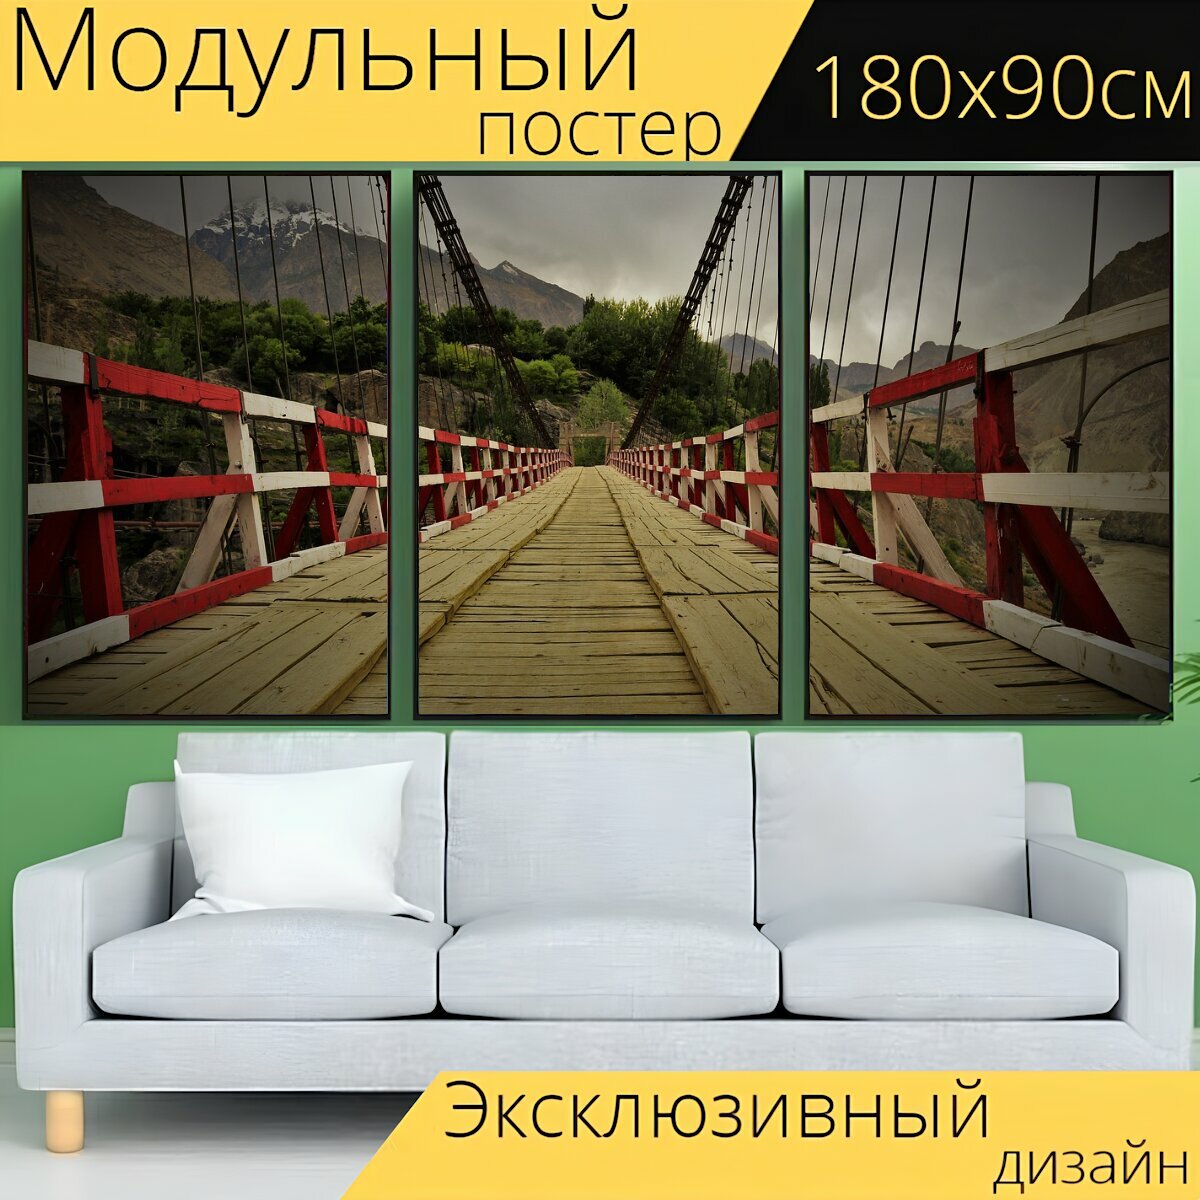 Модульный постер "Мост, старый мост, супер старый мост" 180 x 90 см. для интерьера